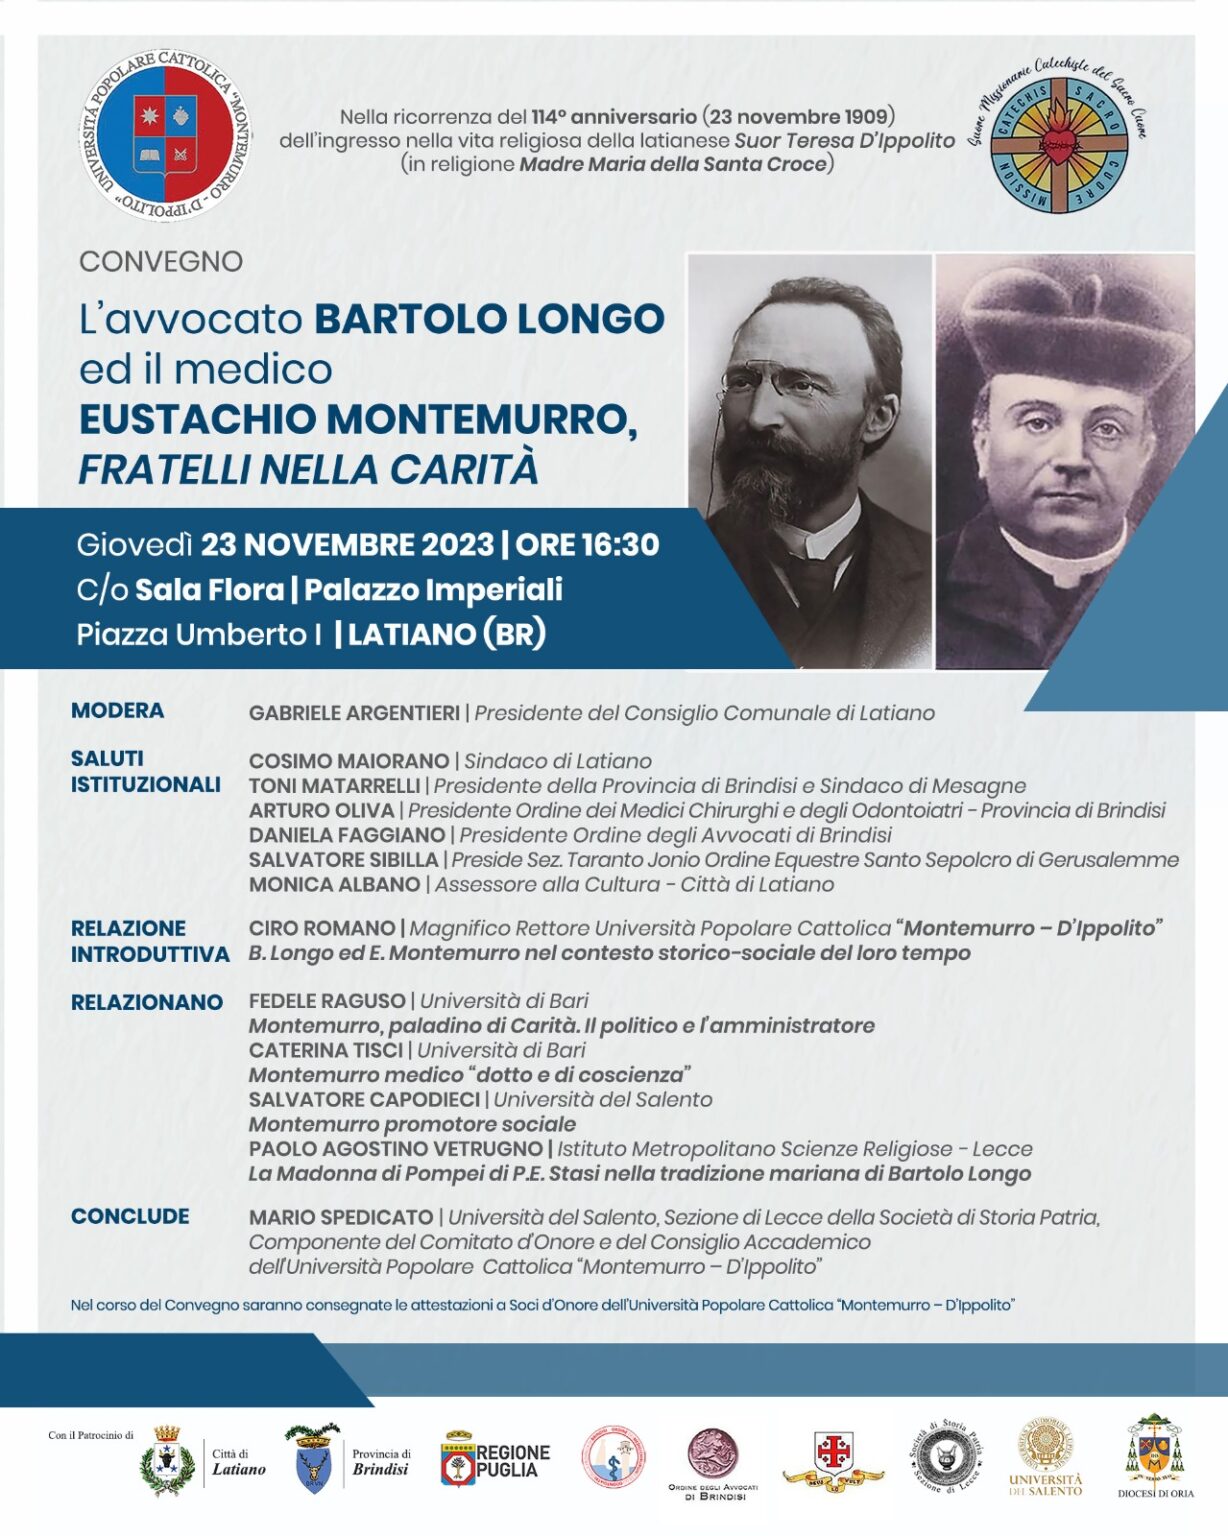 Latiano: Convegno "L’Avv. Bartolo Longo ed il medico Eustachio Montemurro fratellinella carità", il 23 Novembre 2023 